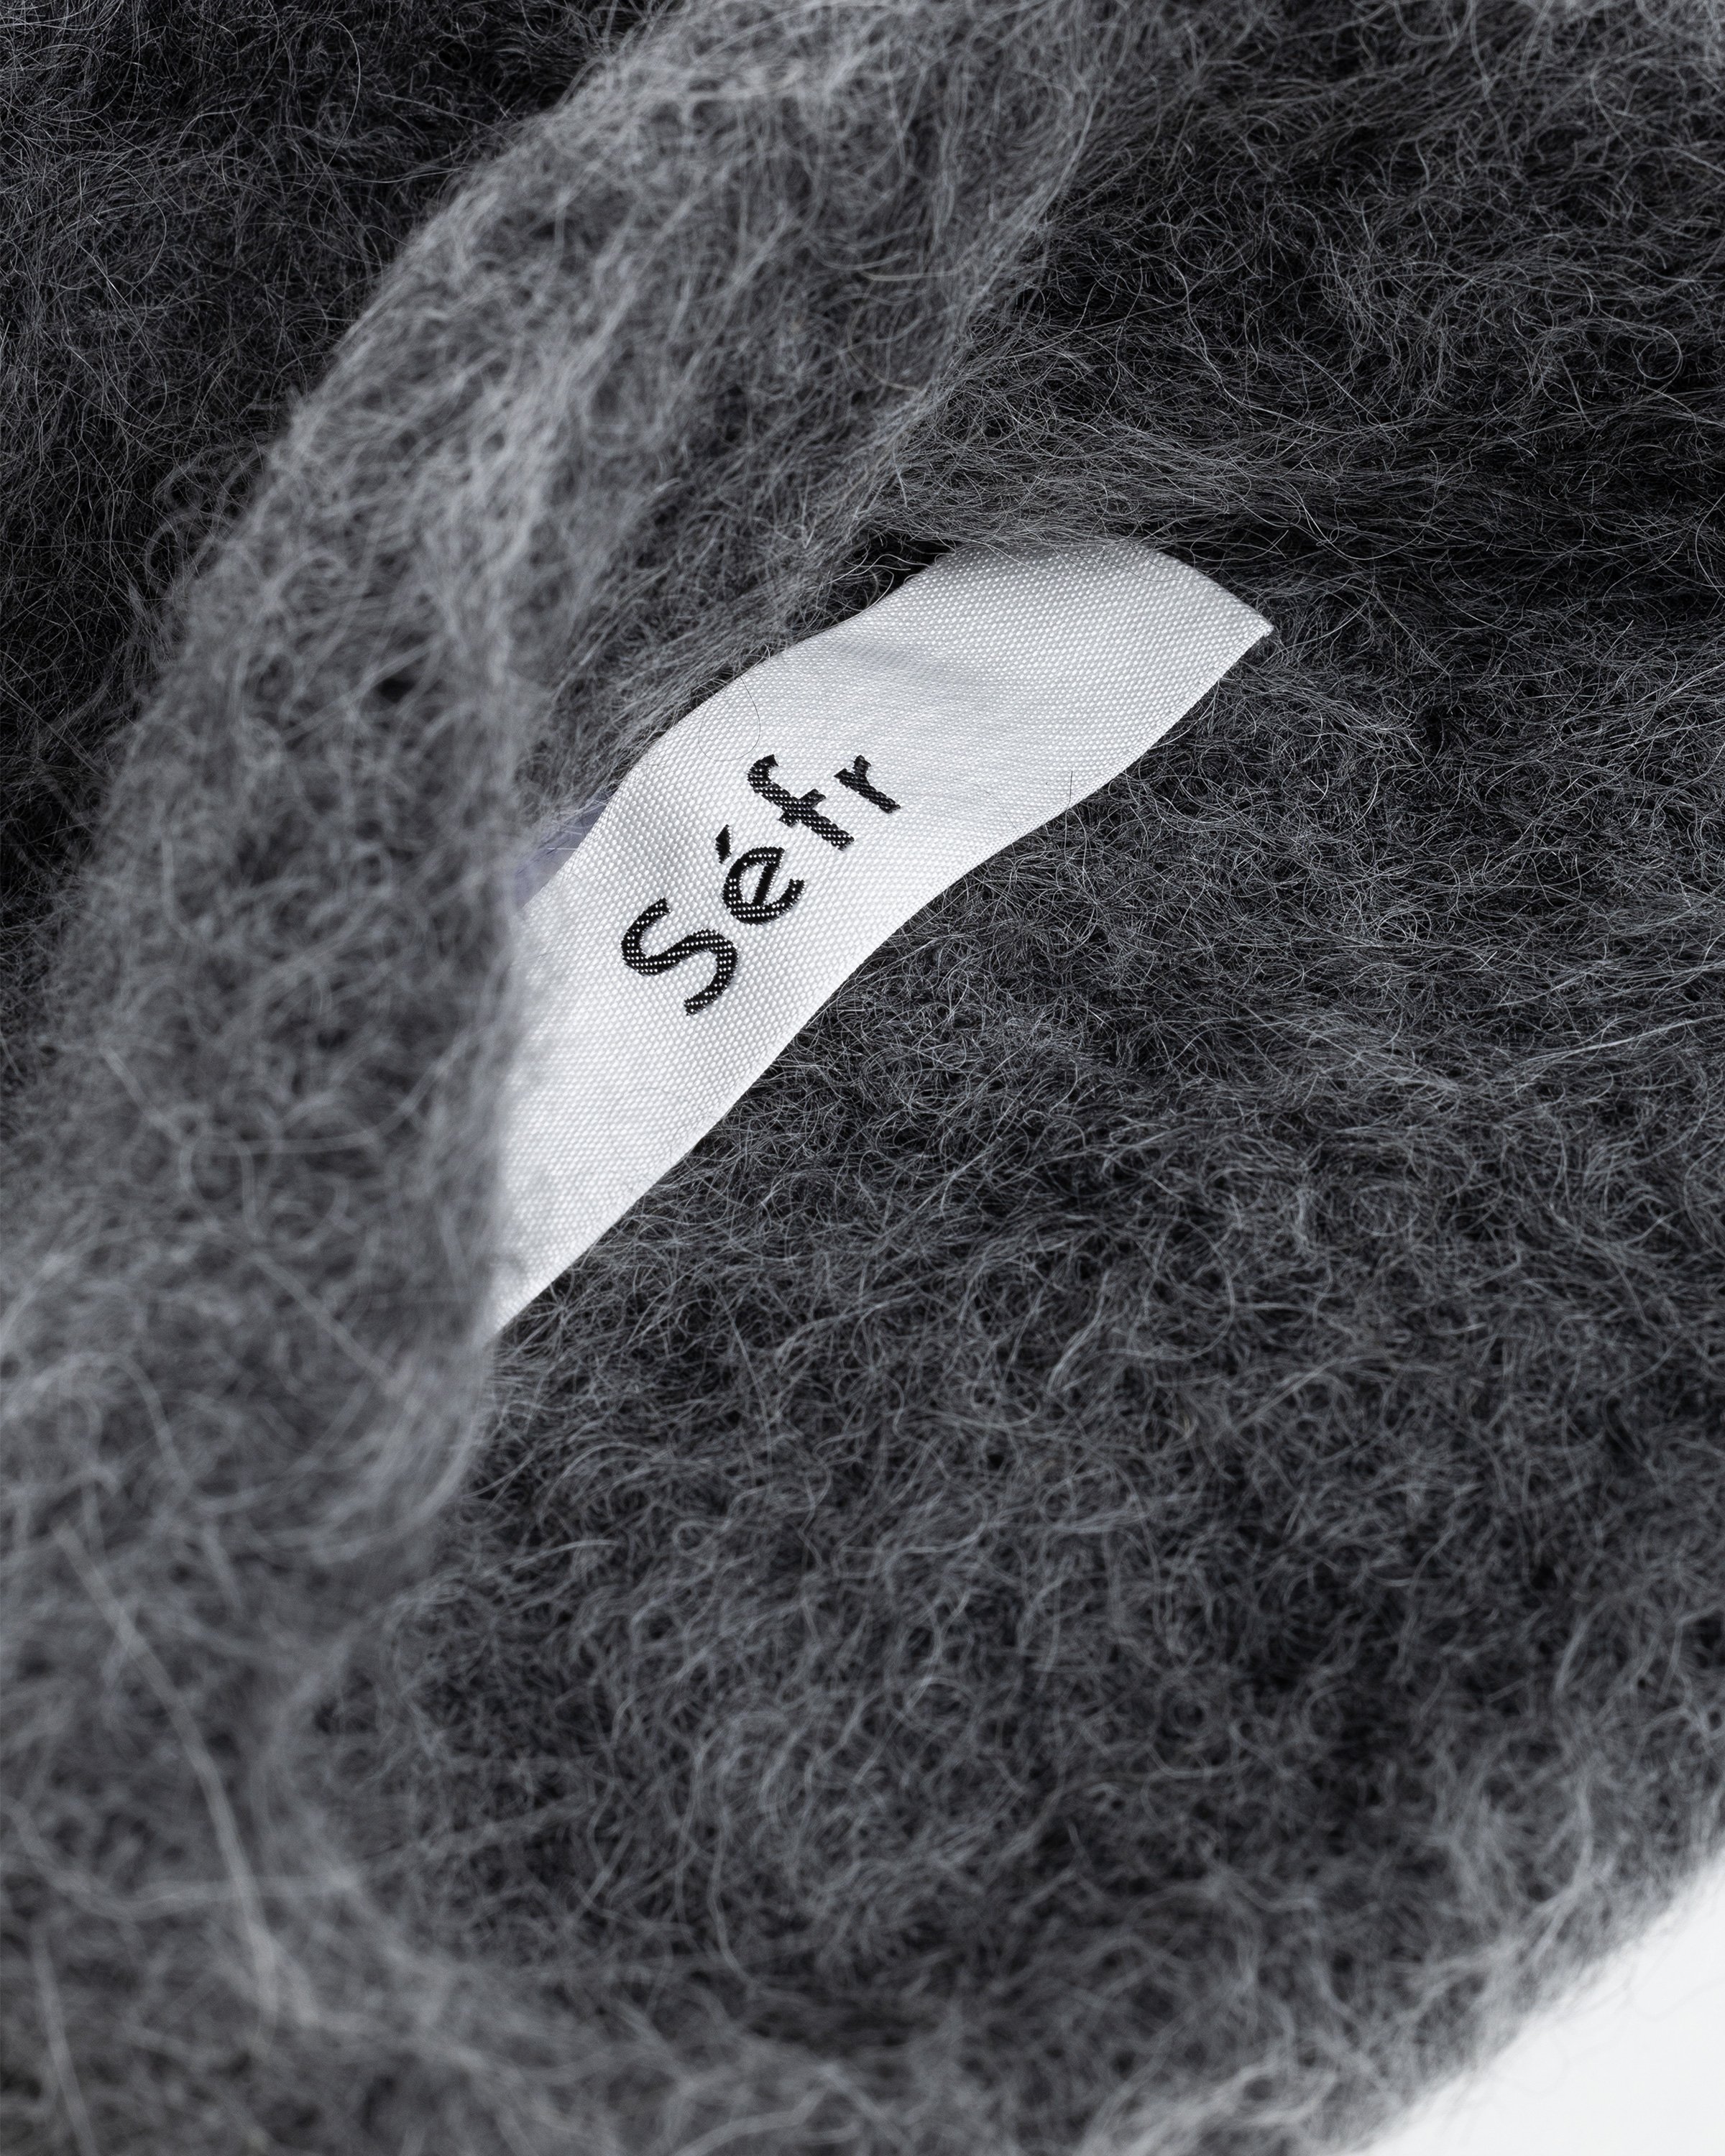 Séfr - Fuzzy Beanie Charcoal Alpaca - Accessories - Black - Image 3